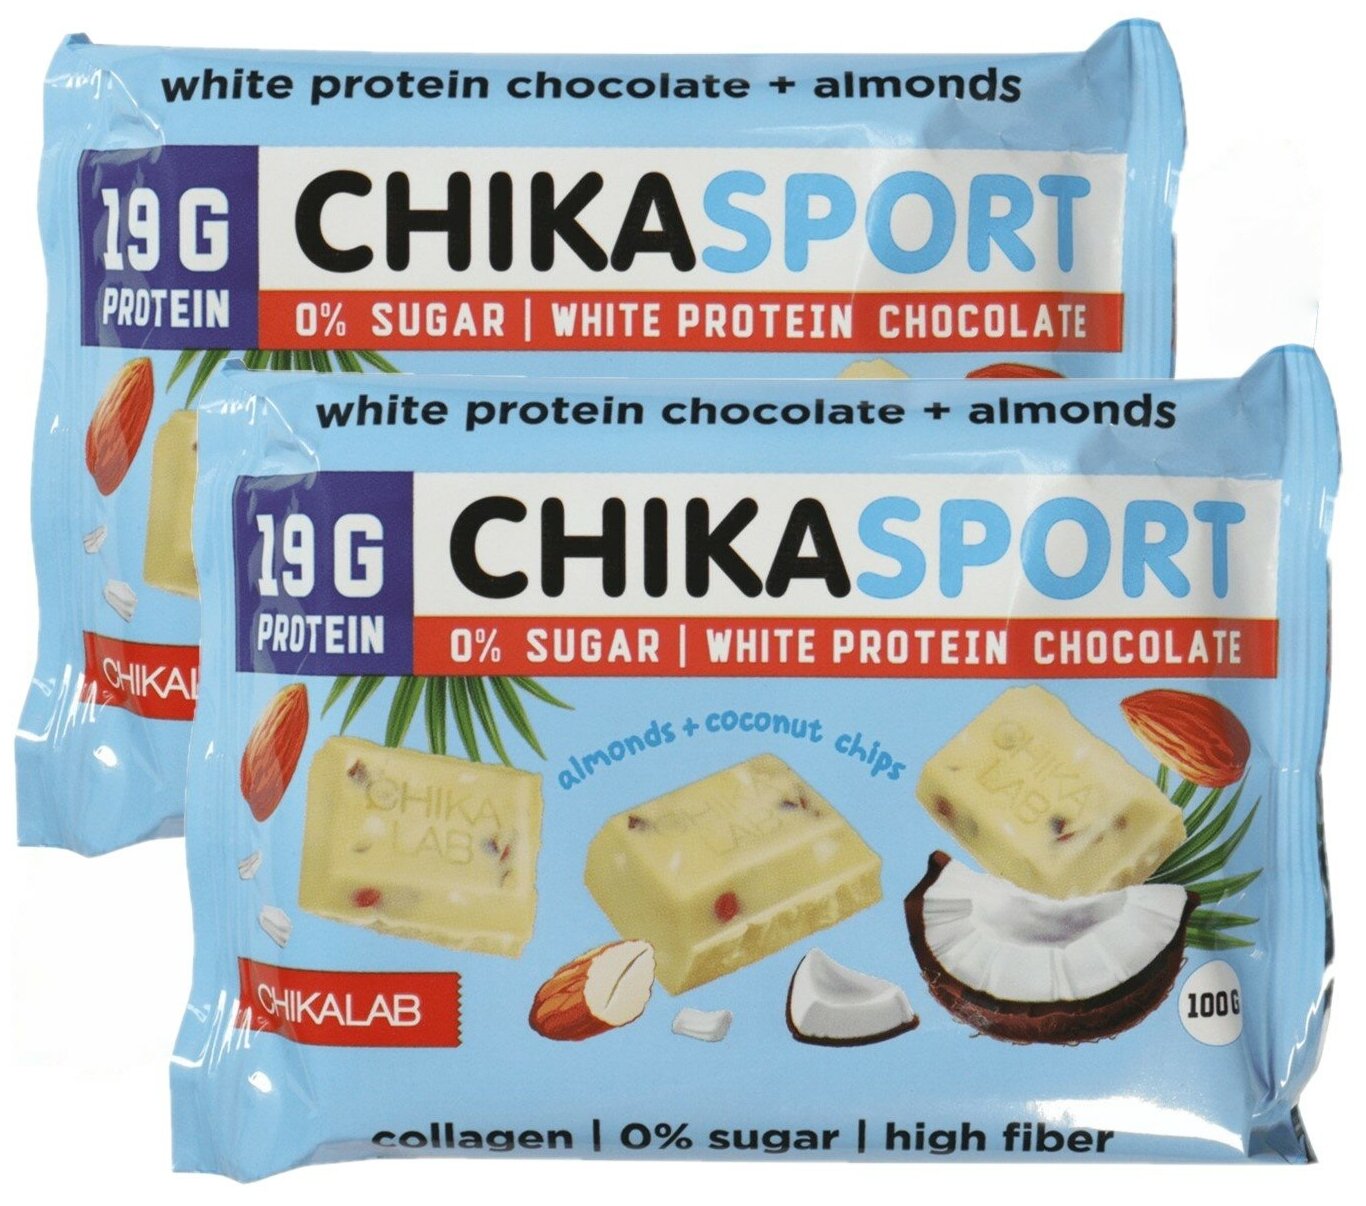 Chikalab белый шоколад Chikasport протеиновый без сахара с миндалем и кокосовыми чипсами 2шт по 100г